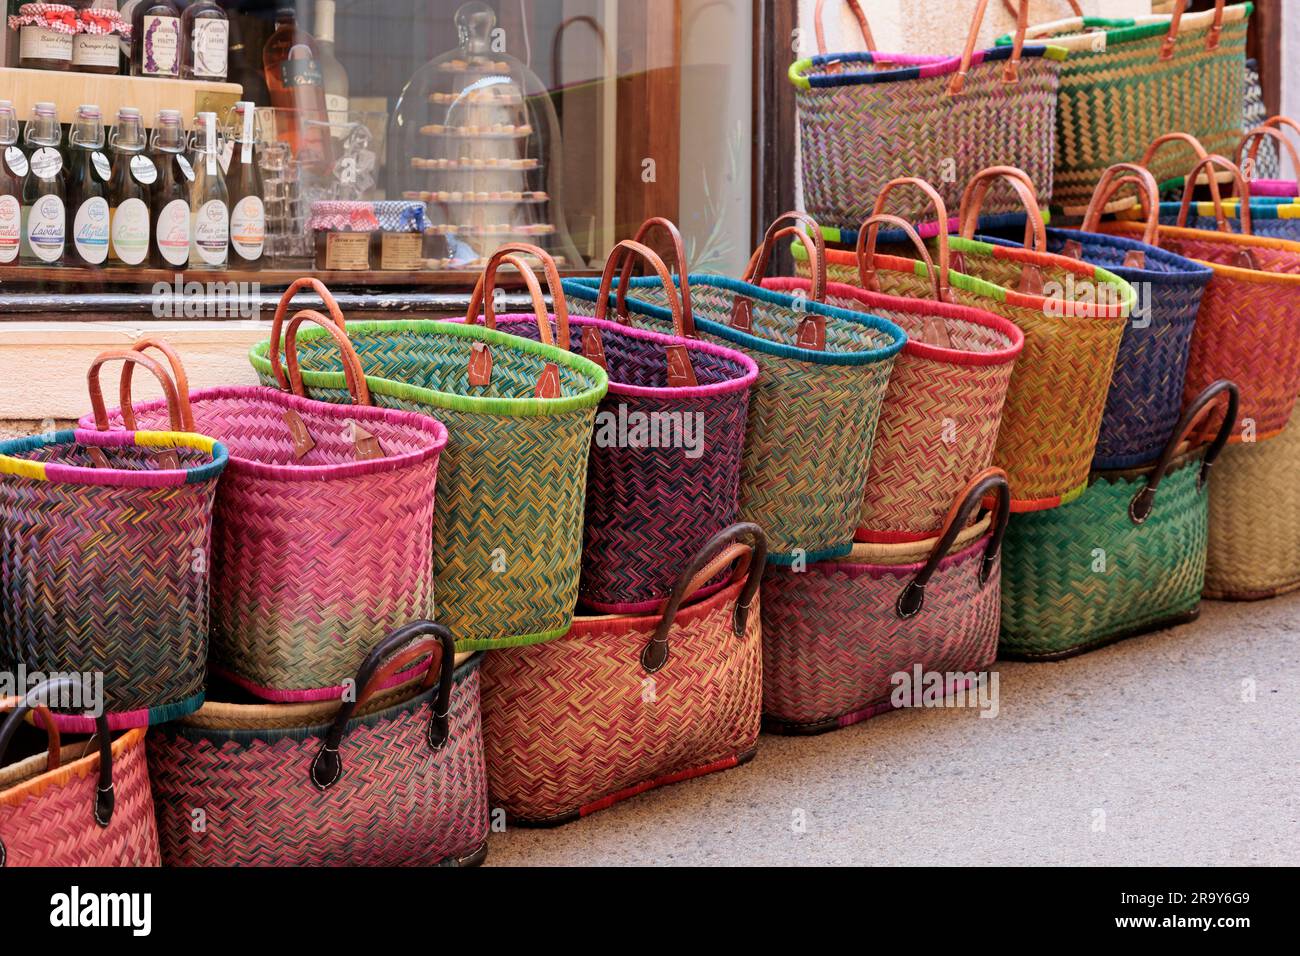 Brightly coloured baskets outside a shop in Moustiers-Sainte-Marie Digne-les-Bains Alpes-de-Haute-Provence Provence-Alpes-Cote d’Azur France Stock Photo